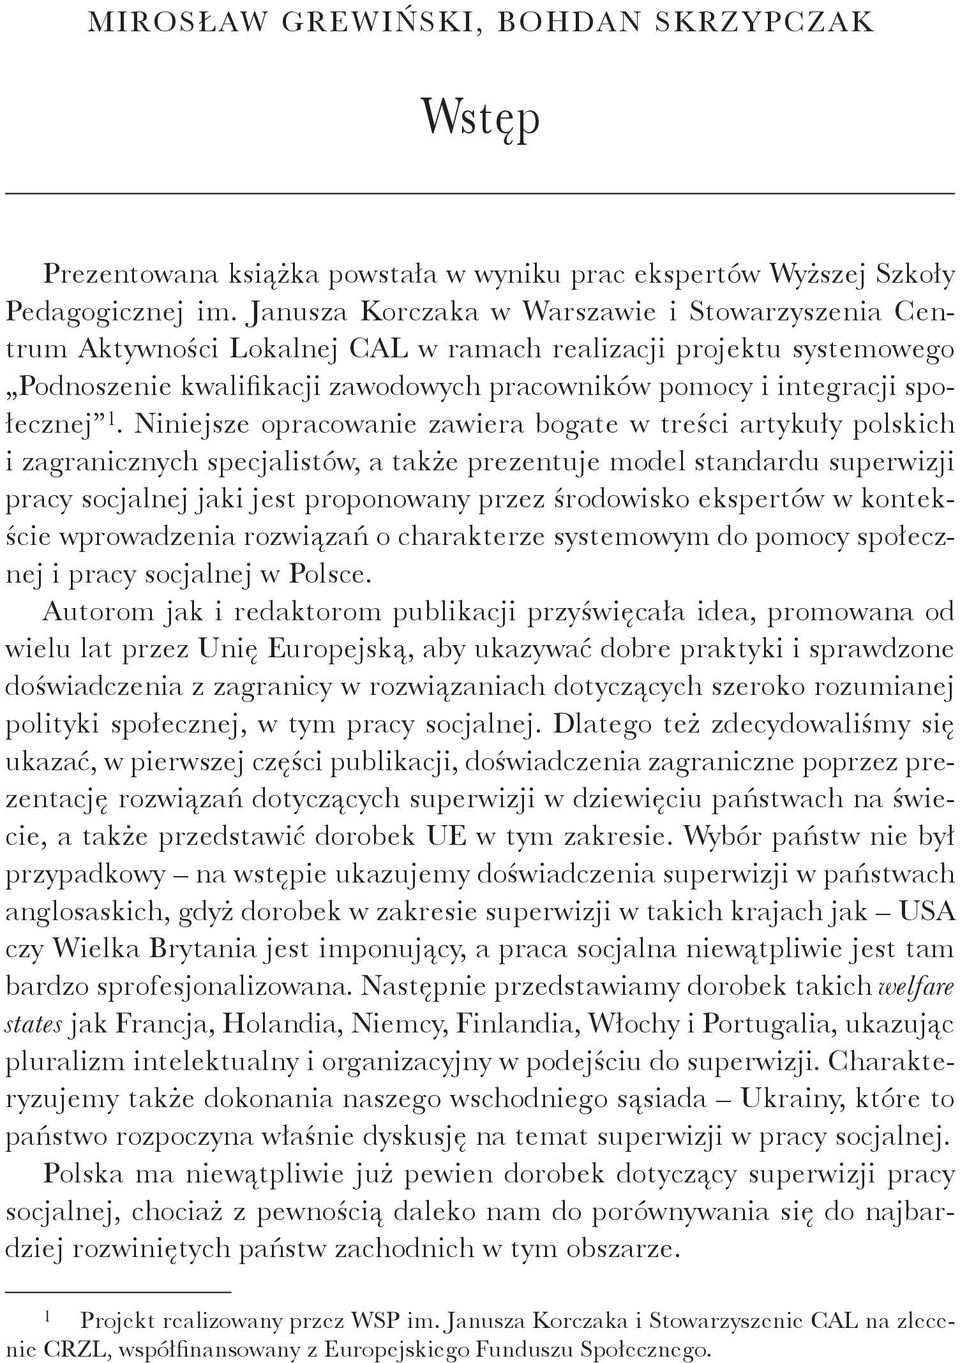 Niniejsze opracowanie zawiera bogate w treści artykuły polskich i zagranicznych specjalistów, a także prezentuje model standardu superwizji pracy socjalnej jaki jest proponowany przez środowisko